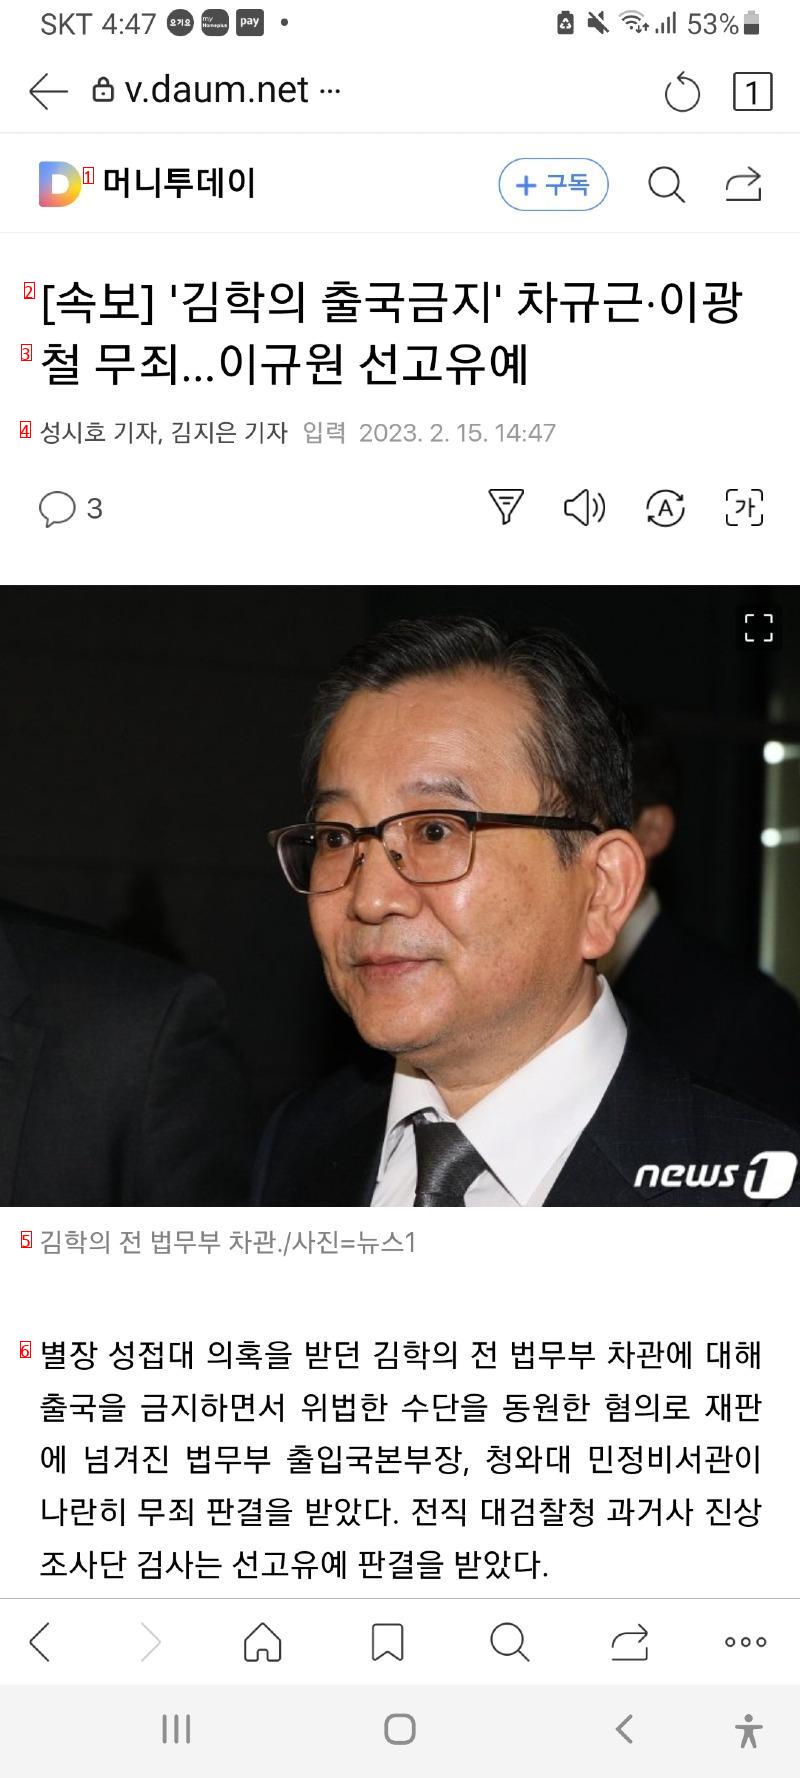 김학의 출국금지 재판결과